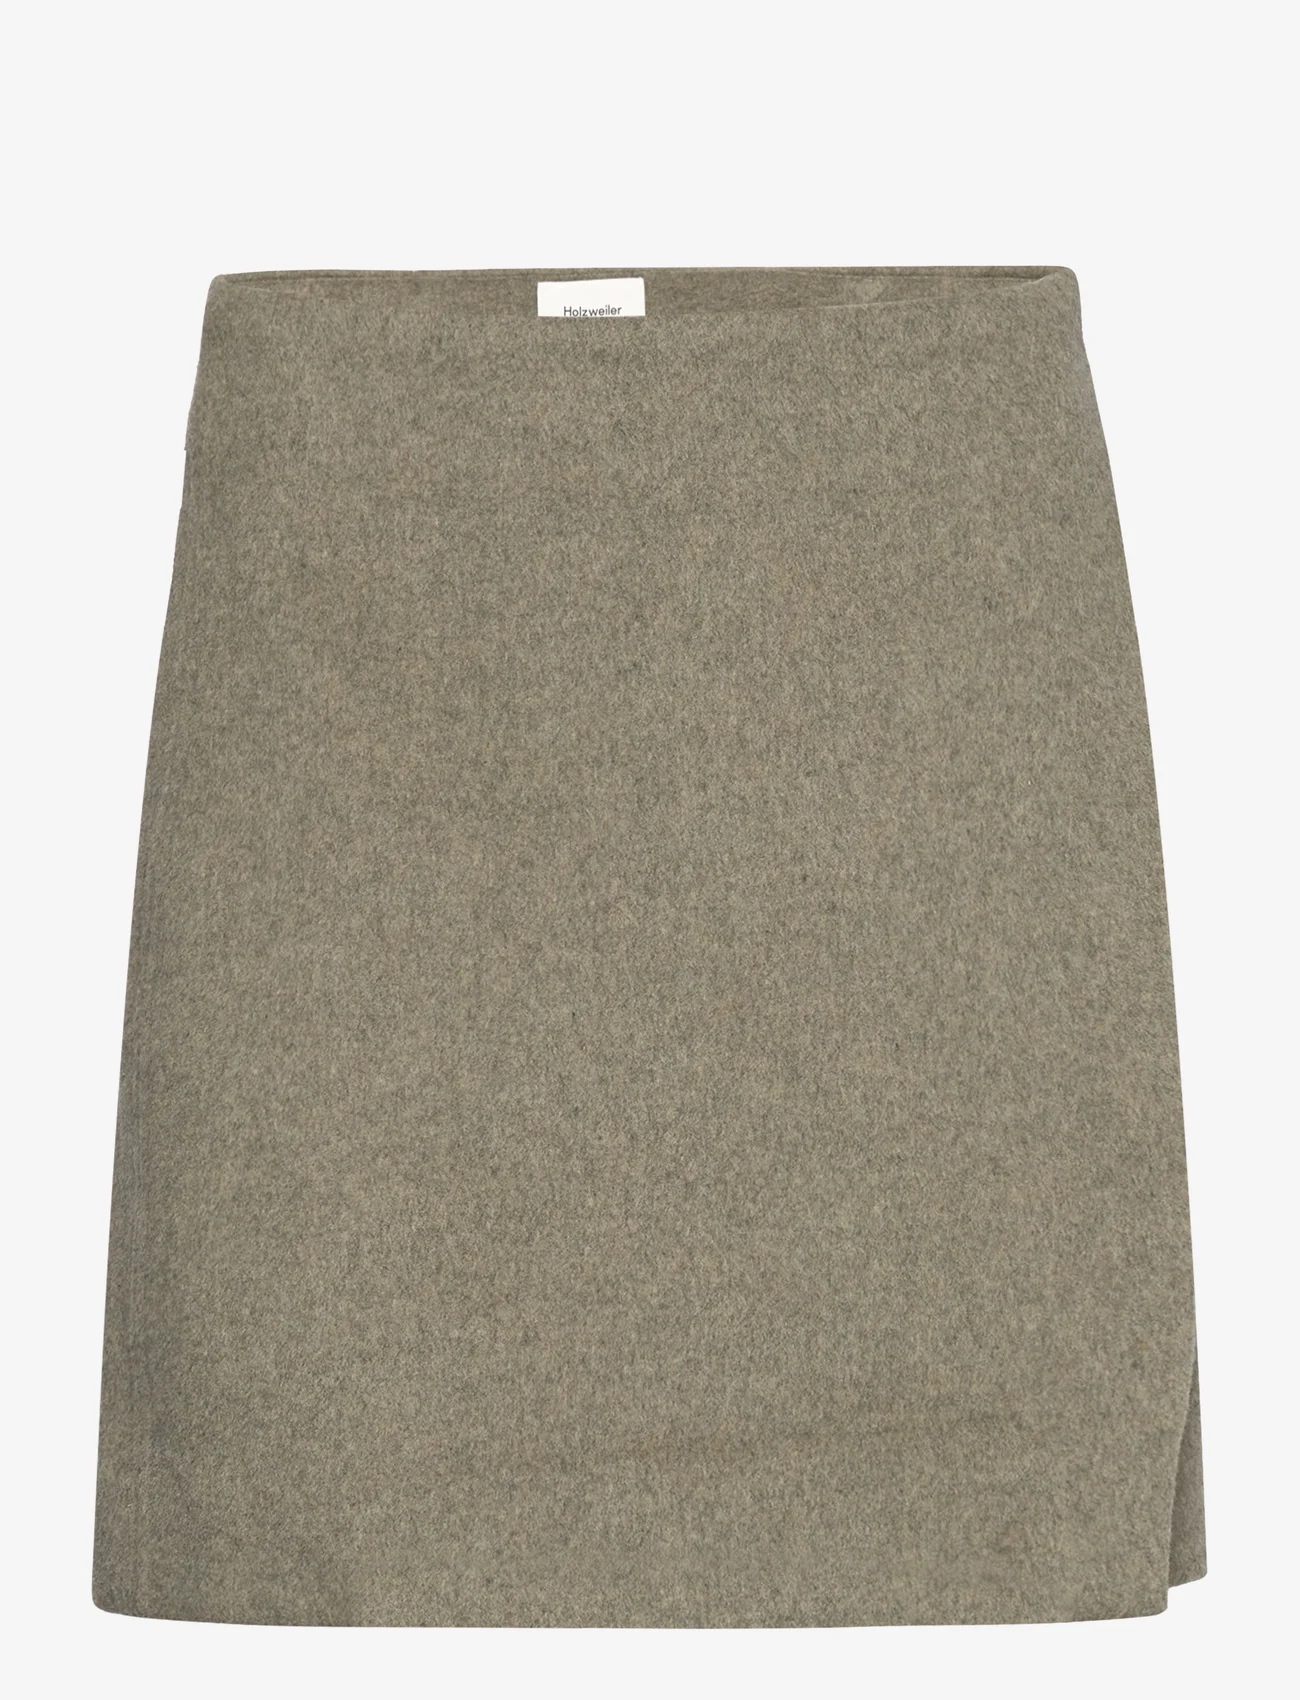 HOLZWEILER - Erina Wool Skirt - korte nederdele - green - 0